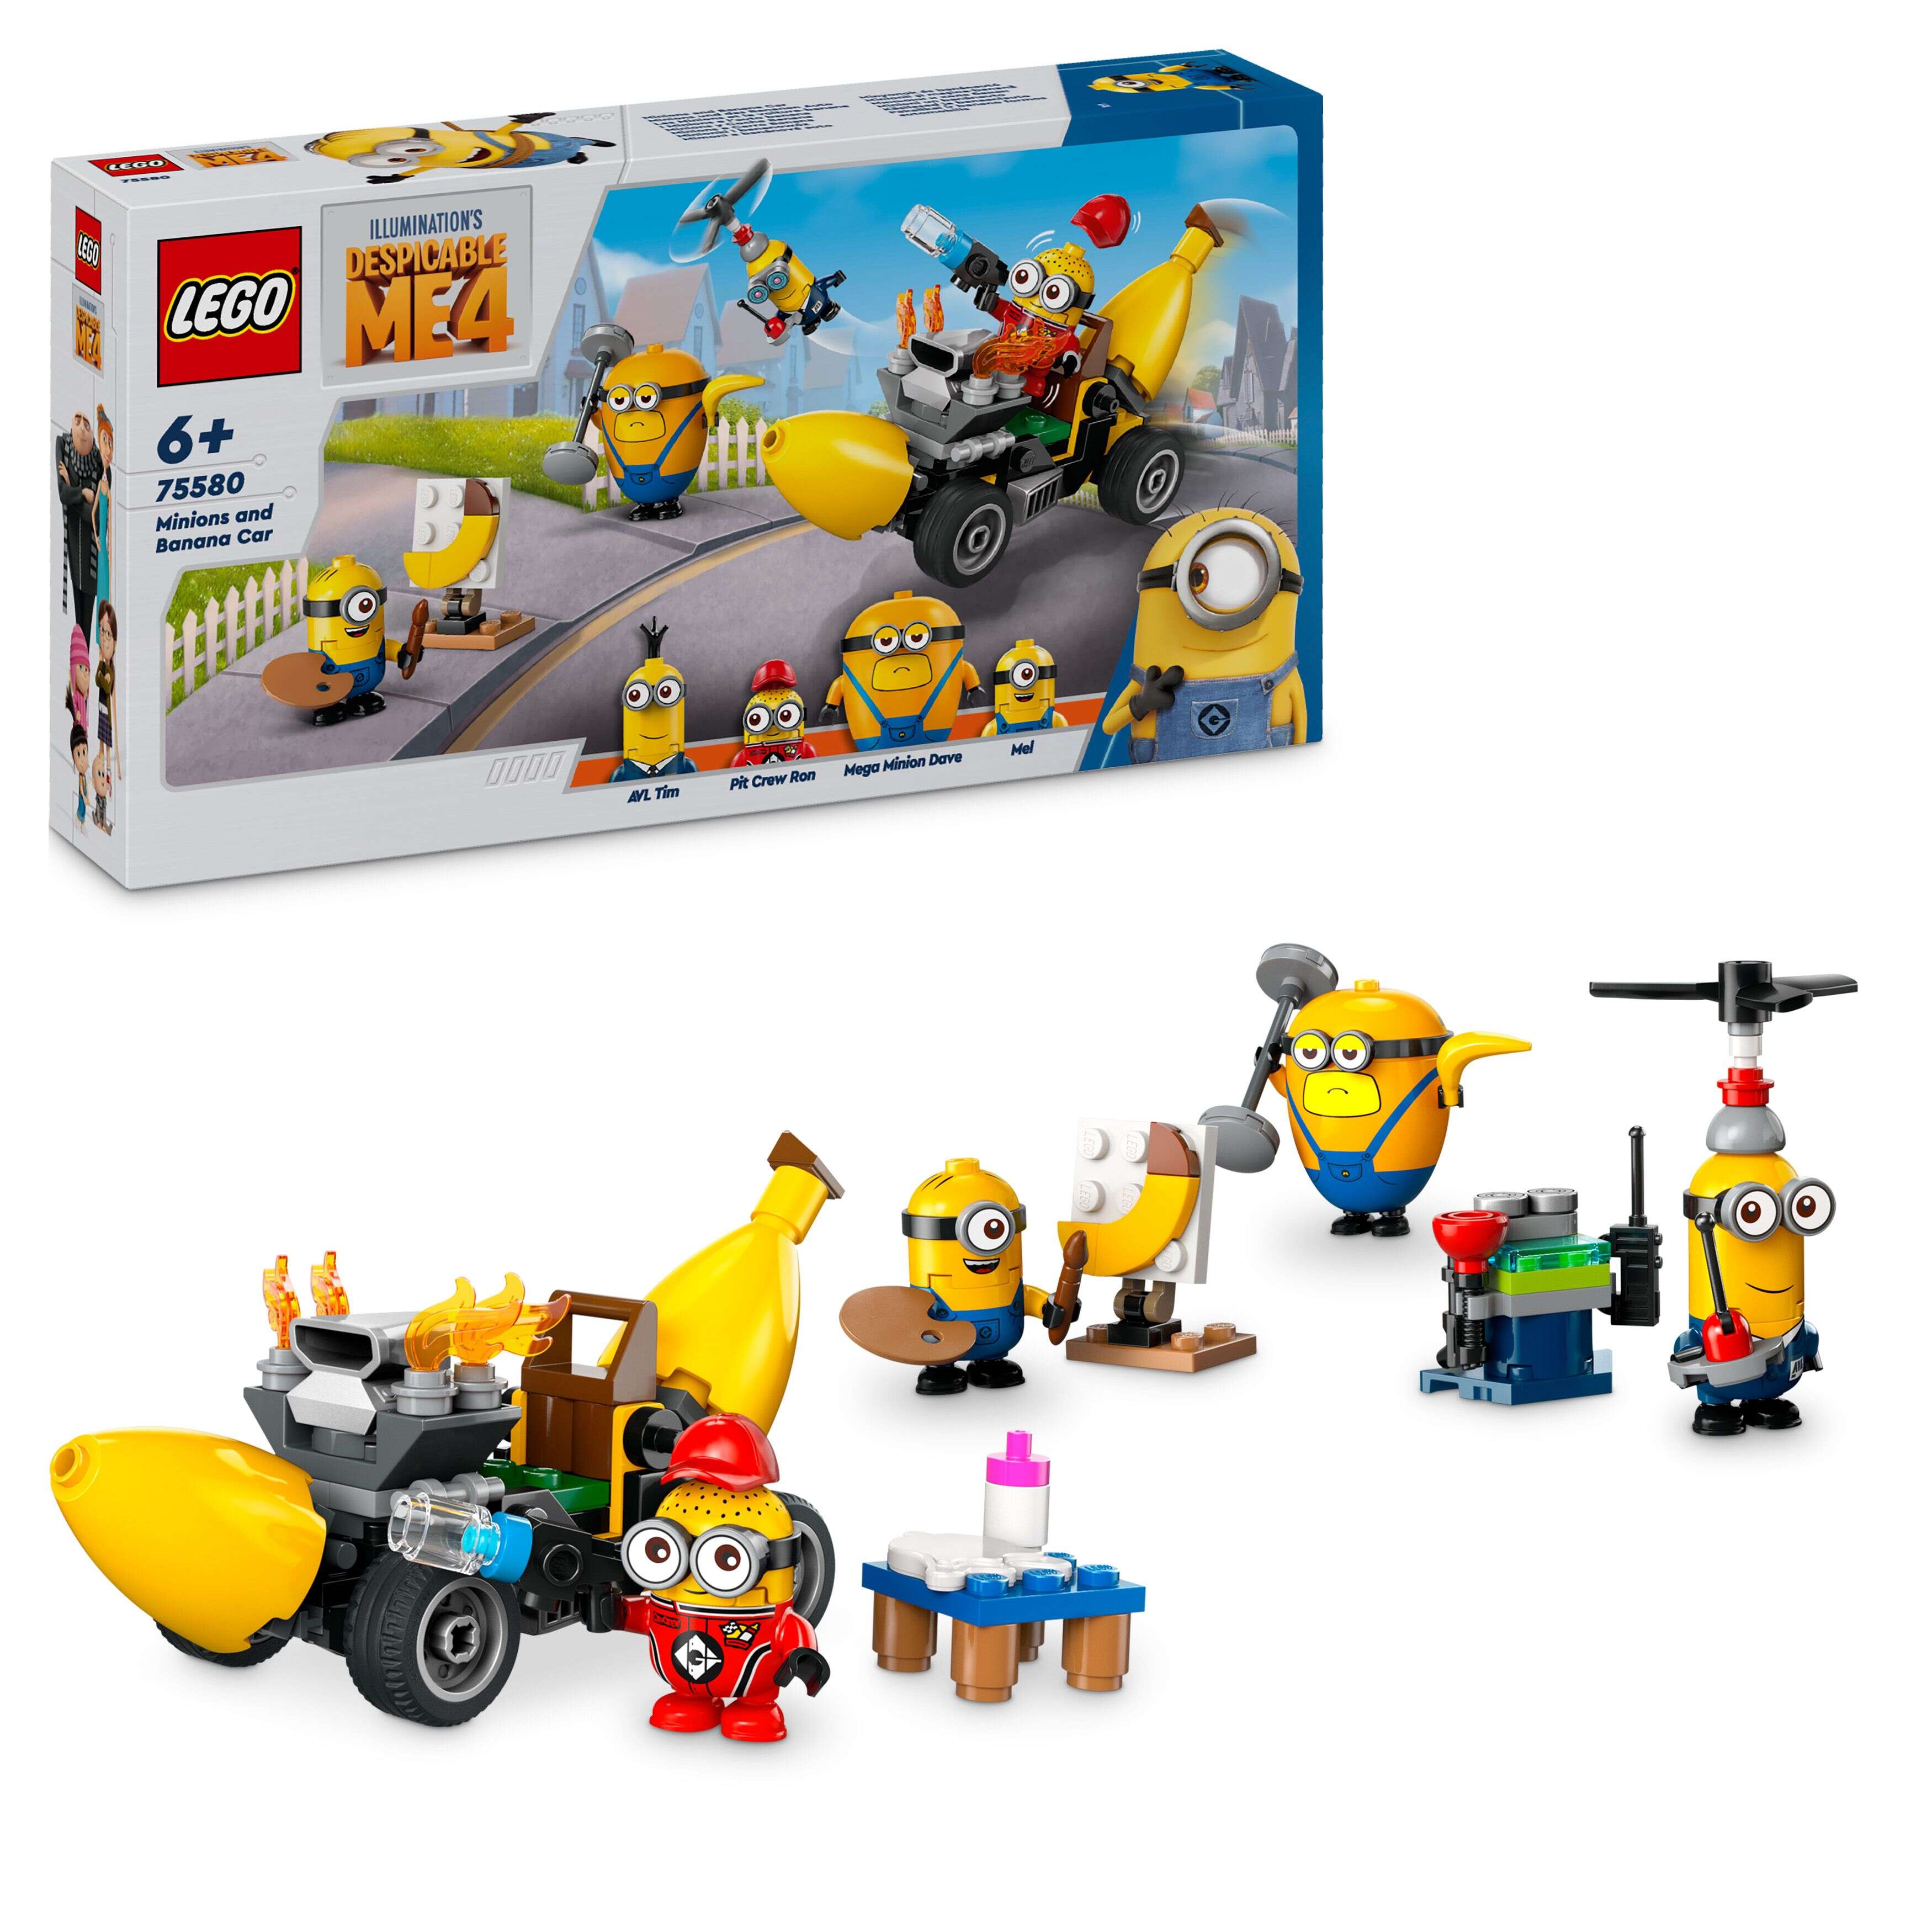 LEGO 75580 Despicable Me Minions und das Bananen Auto, 4 Minions und Zubehör